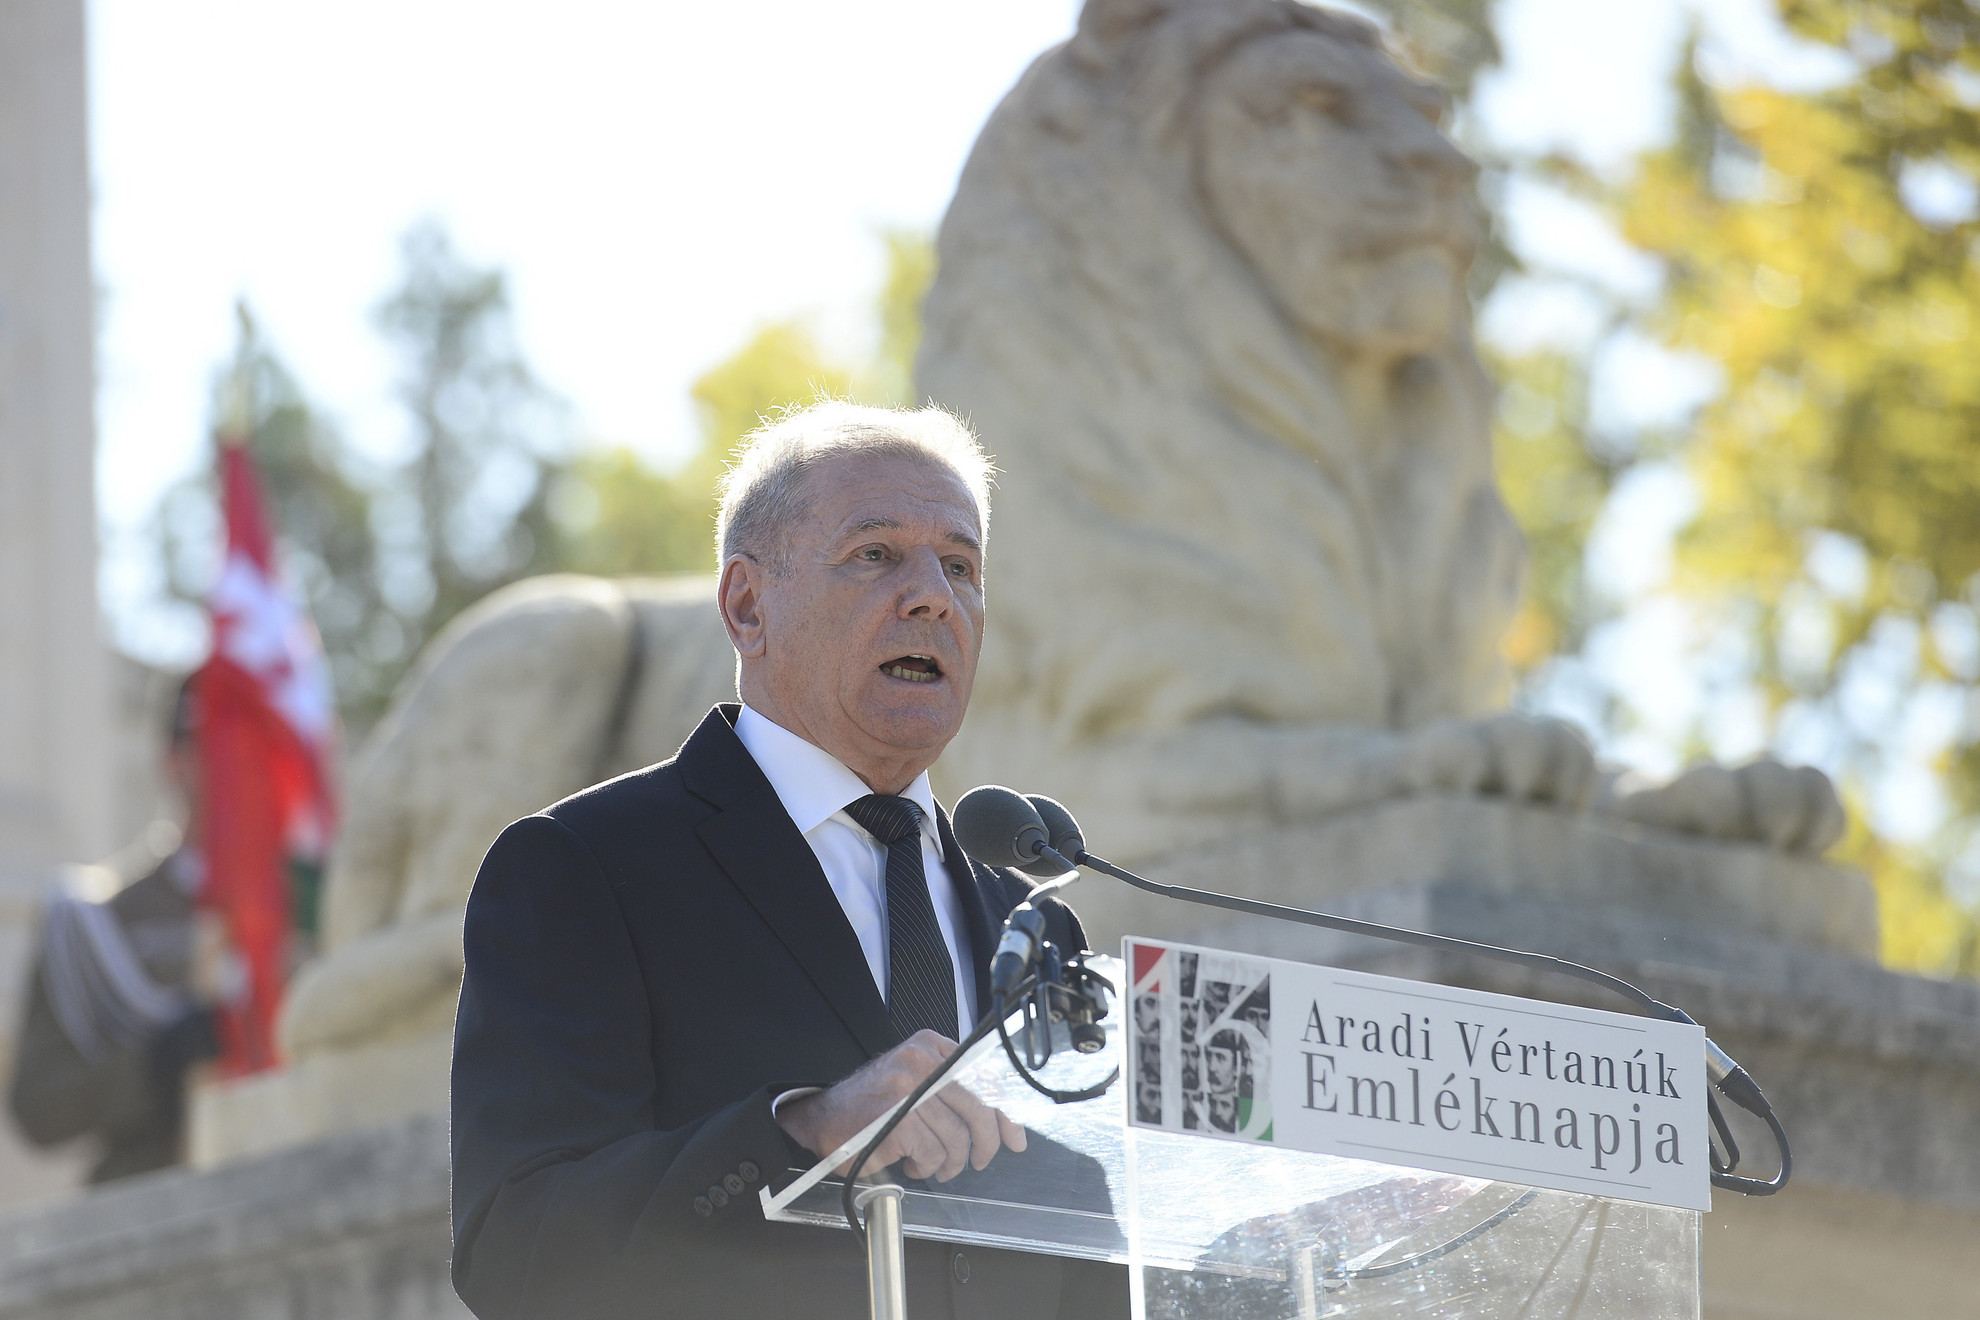 Benkő Tibor honvédelmi miniszter beszédet mond a Fiumei úti nemzeti sírkertben, a Batthyány-mauzóleumnál az aradi vértanúk emléknapja alkalmából tartott rendezvényen 2020. október 6-án